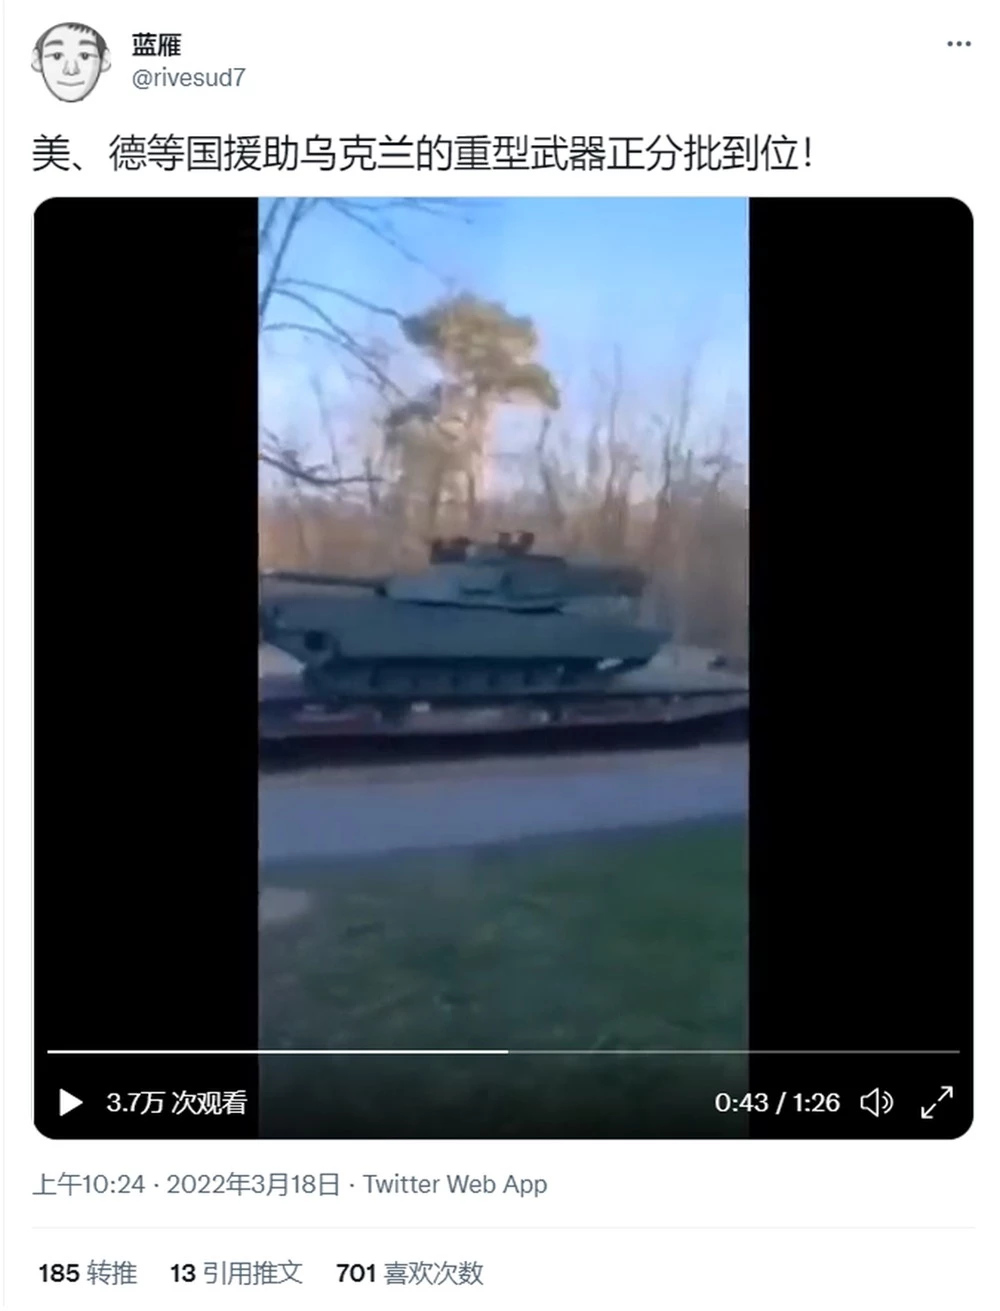 Vũ khí hạng nặng, bao gồm xe tăng của Mỹ và Đức đã cập bến Ukraine? Hé lộ chân tướng - Ảnh 1.